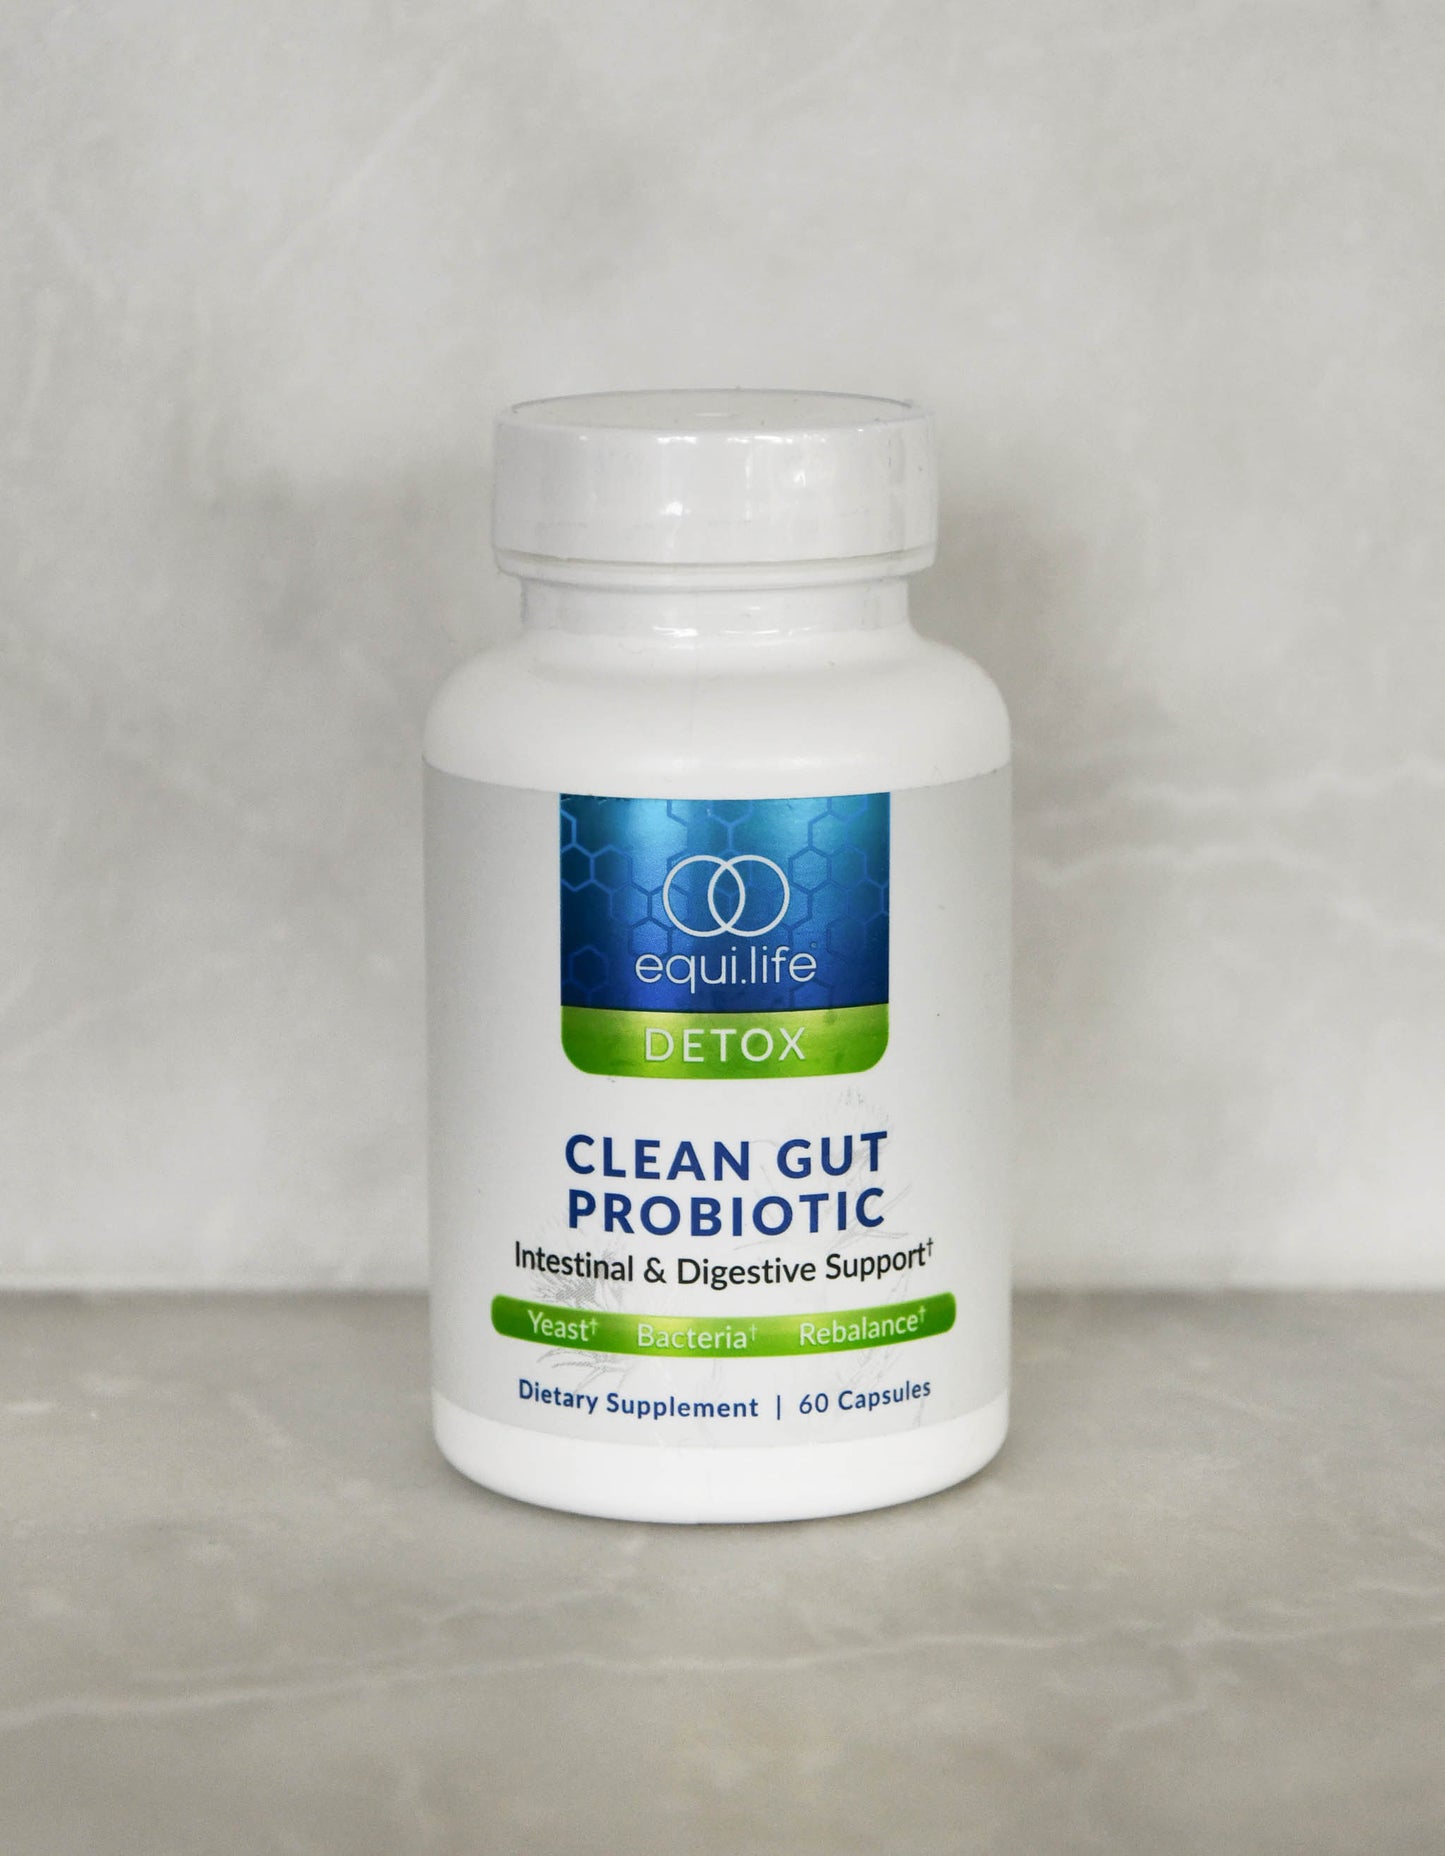 Clean Gut Probiotic